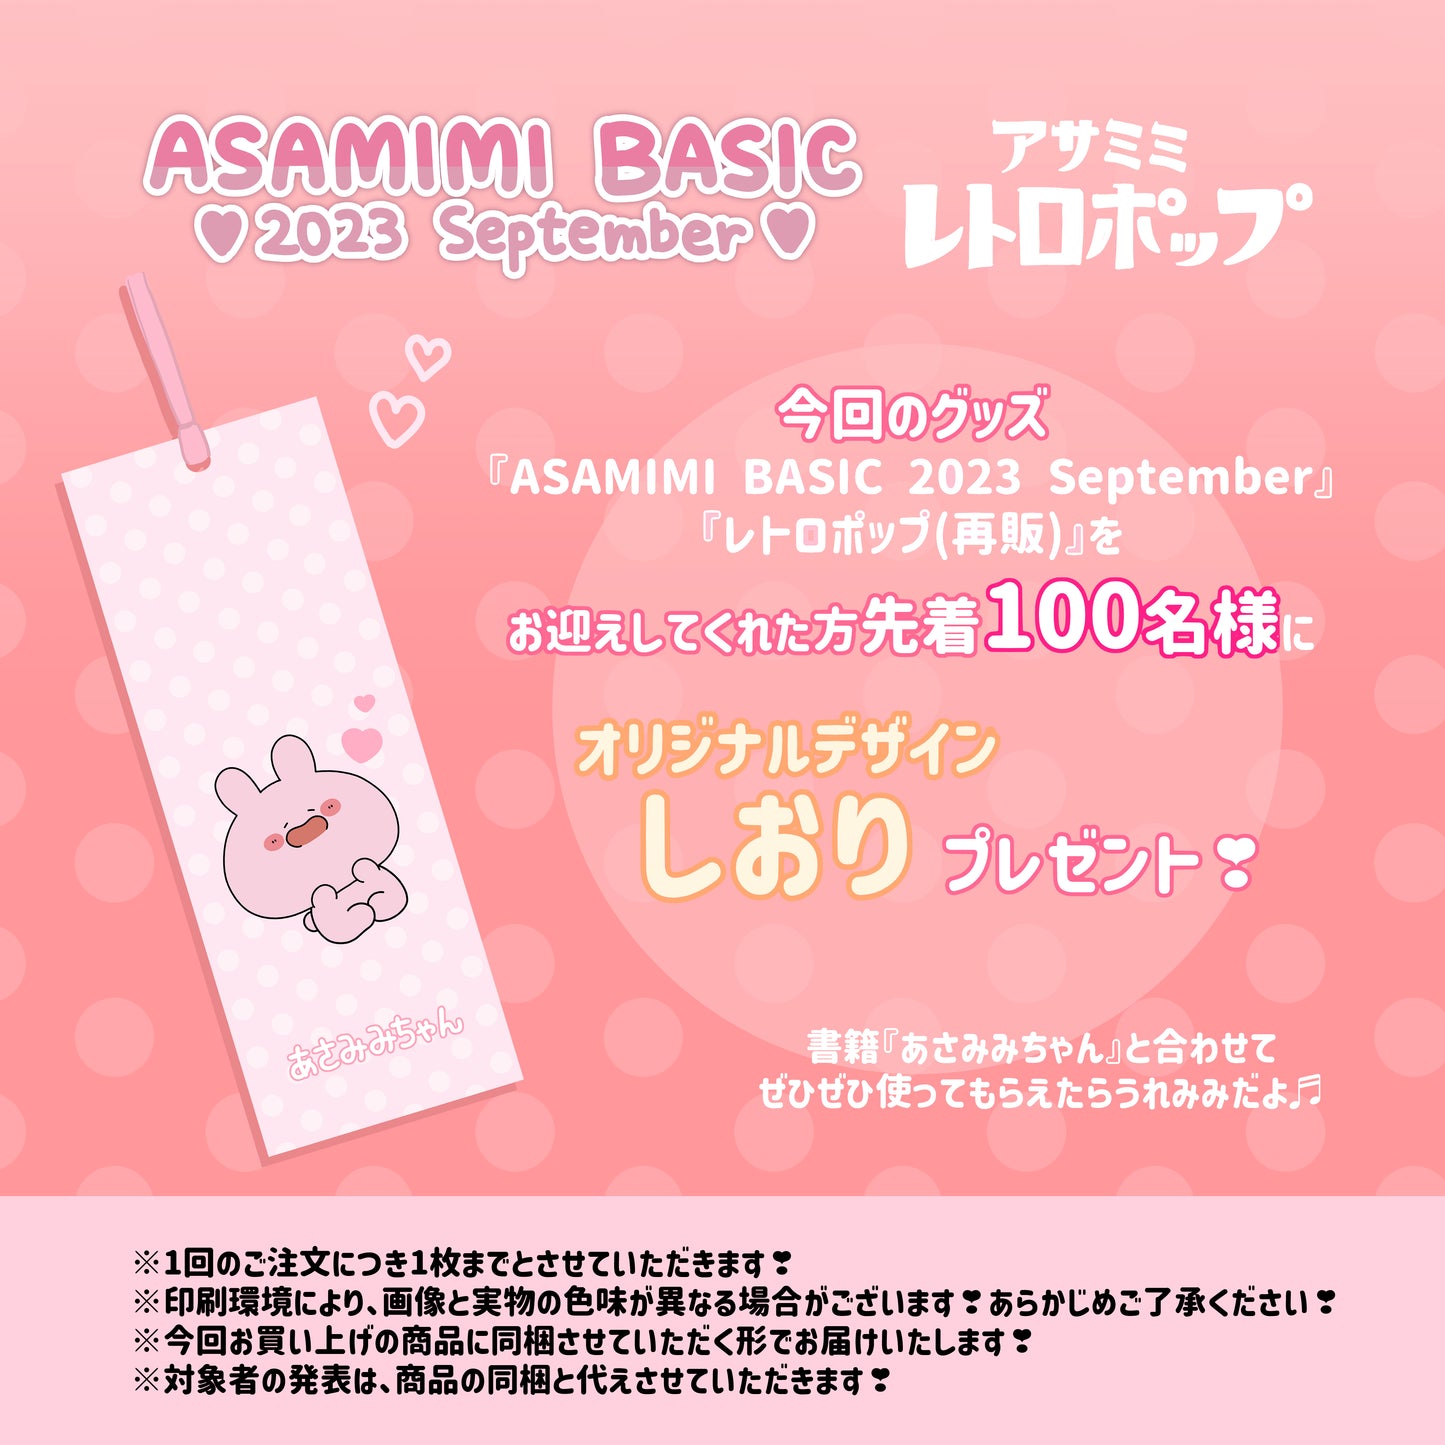 [Asamimi-chan] Gyutto Wood Binder (ASAMIMI BASIC 2023 September) [Shipped in mid-November]